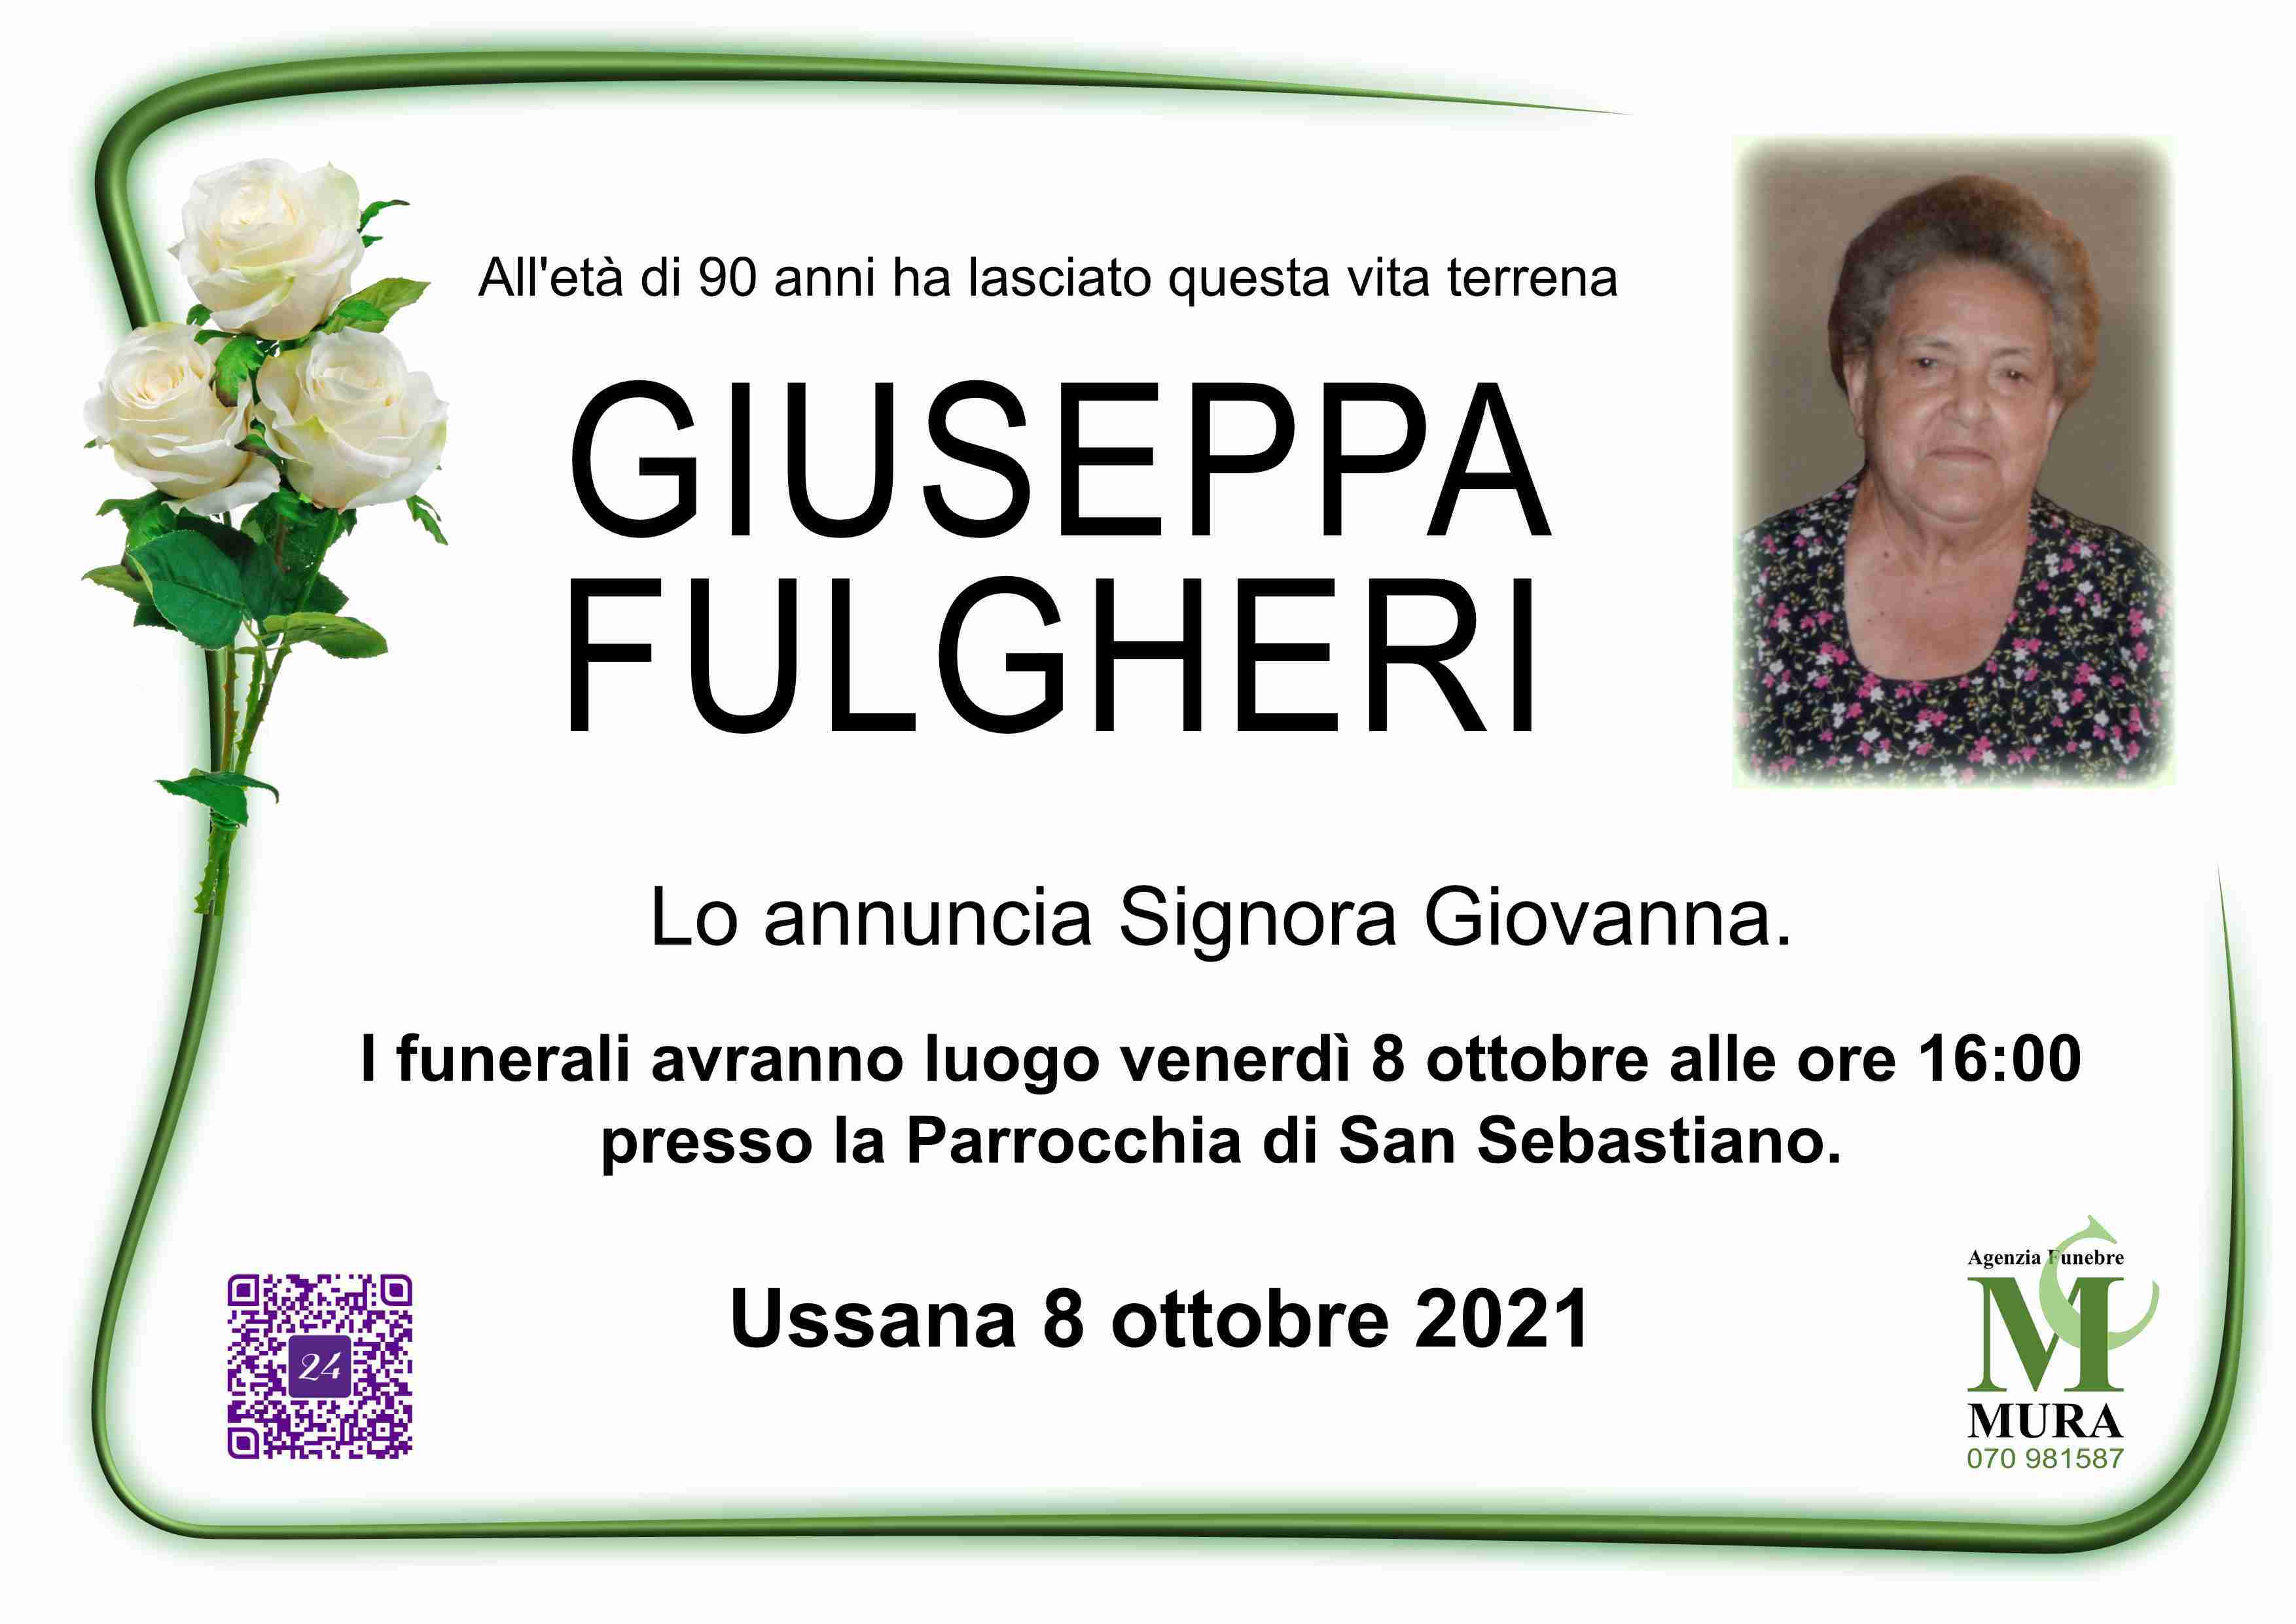 Giuseppa Fulgheri